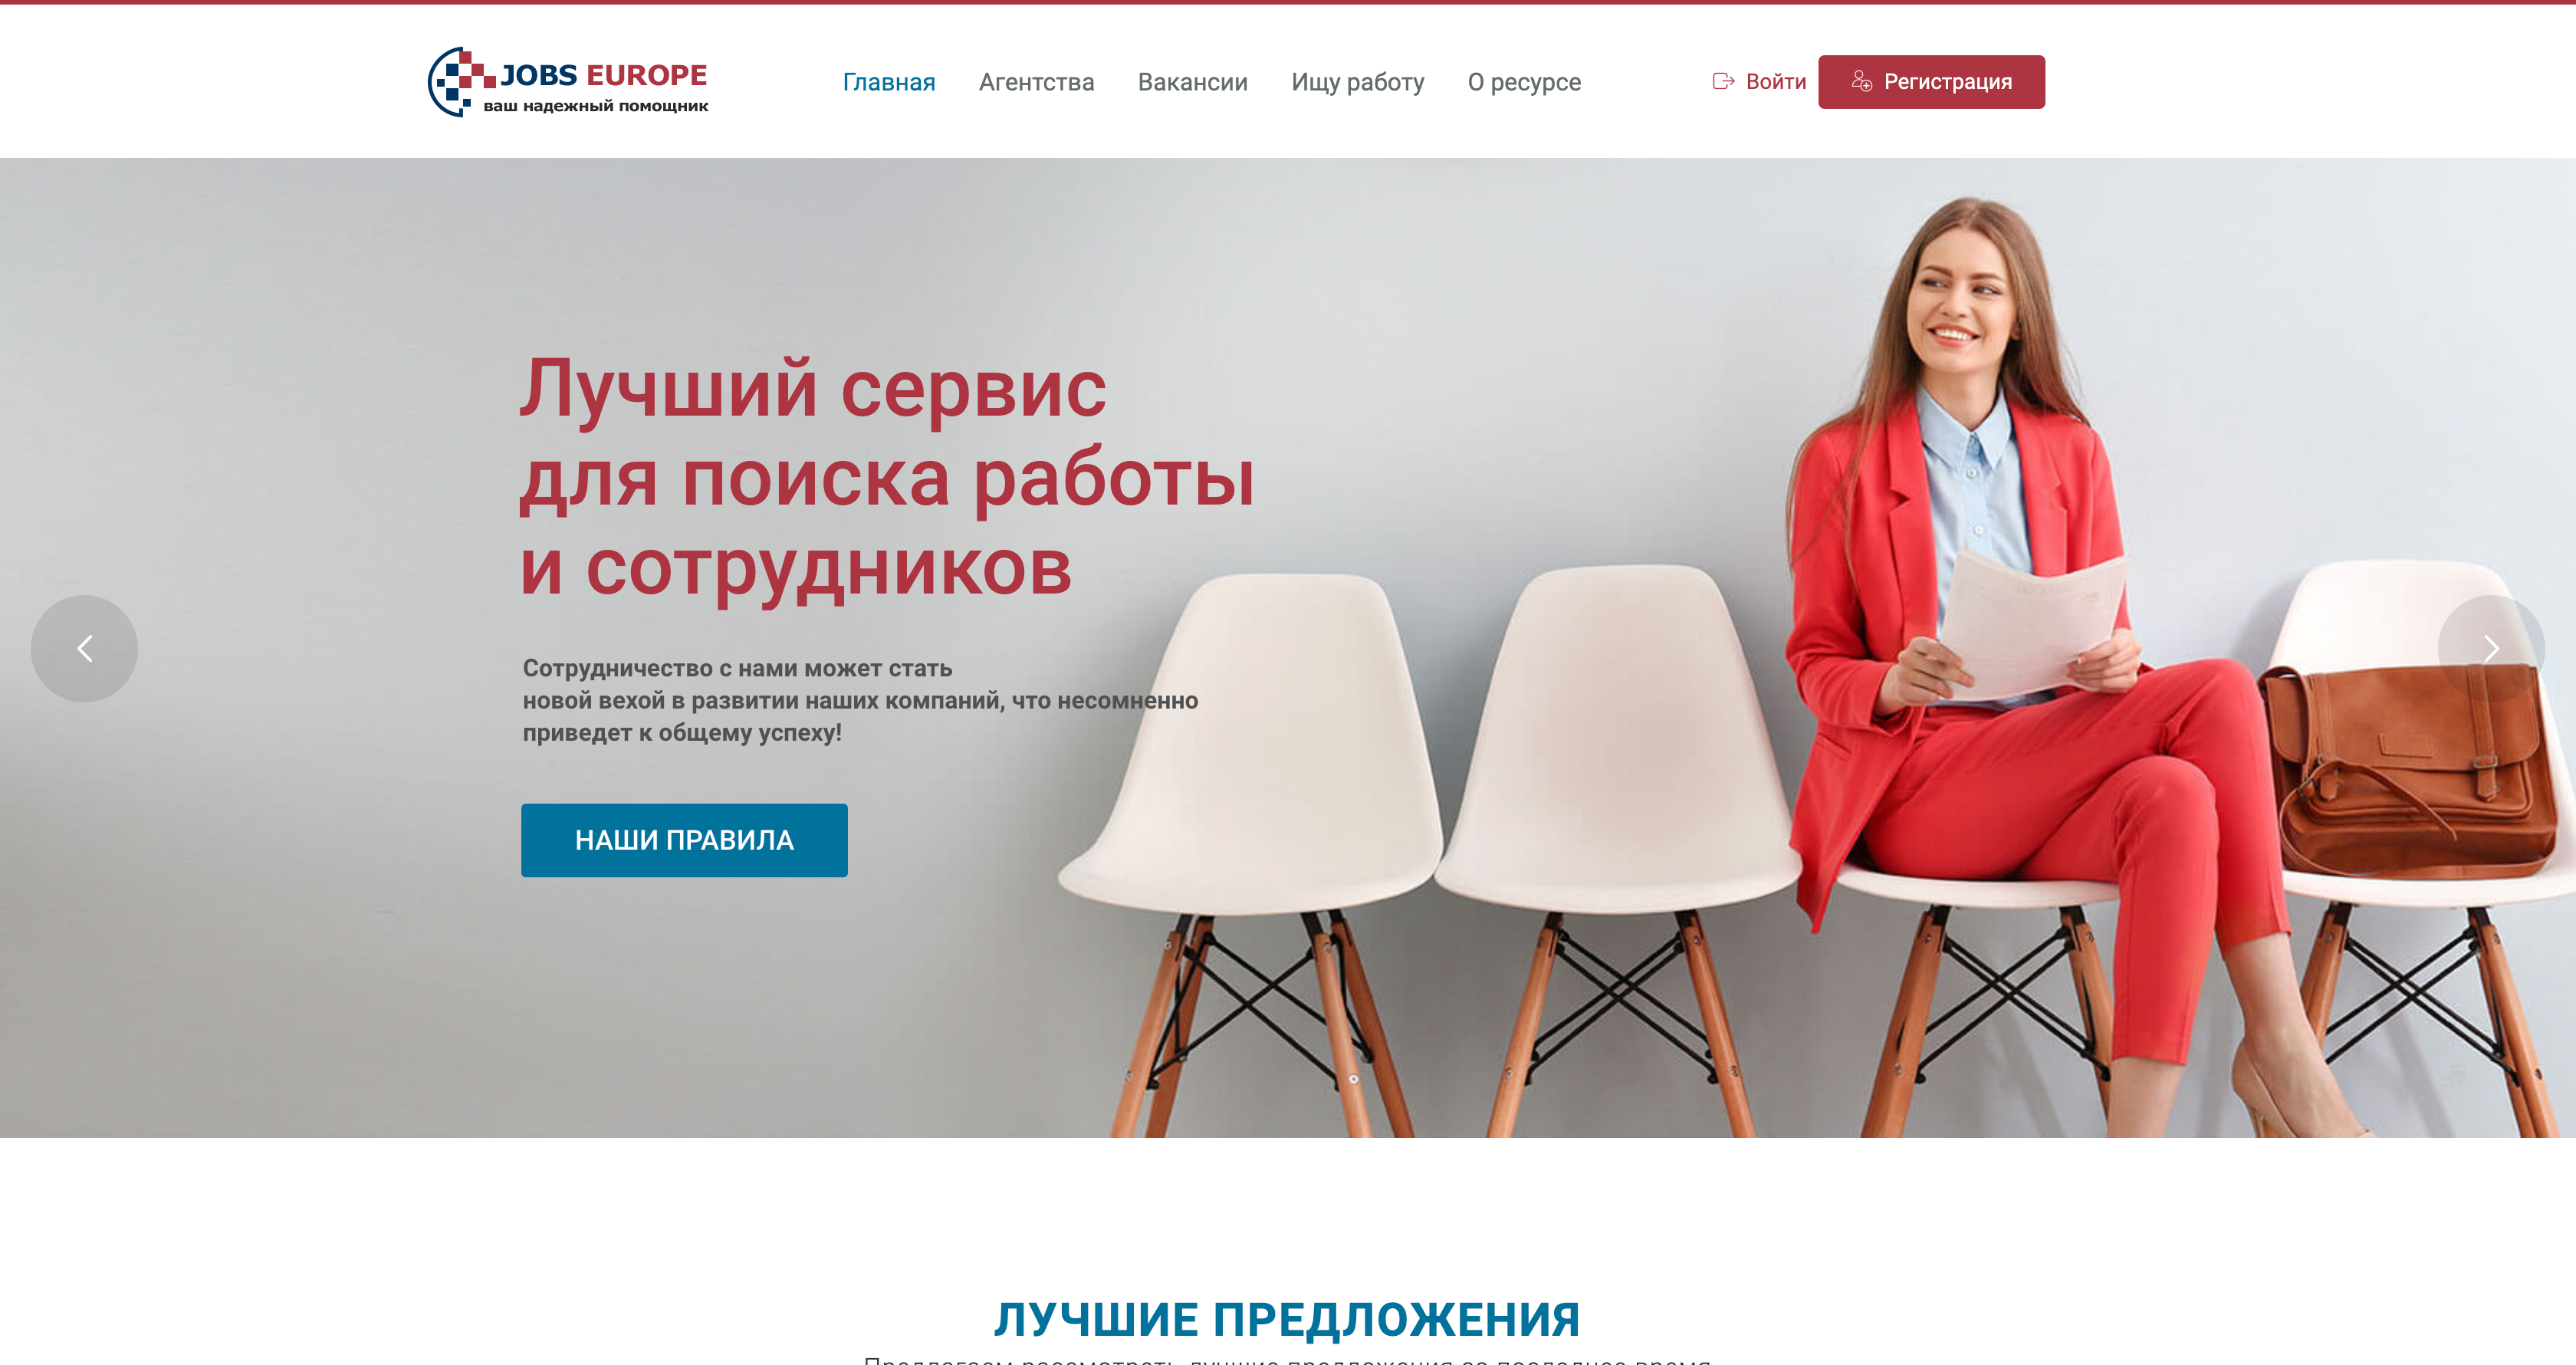 Сервис поиска работы для русскоговорящих в странах Европы